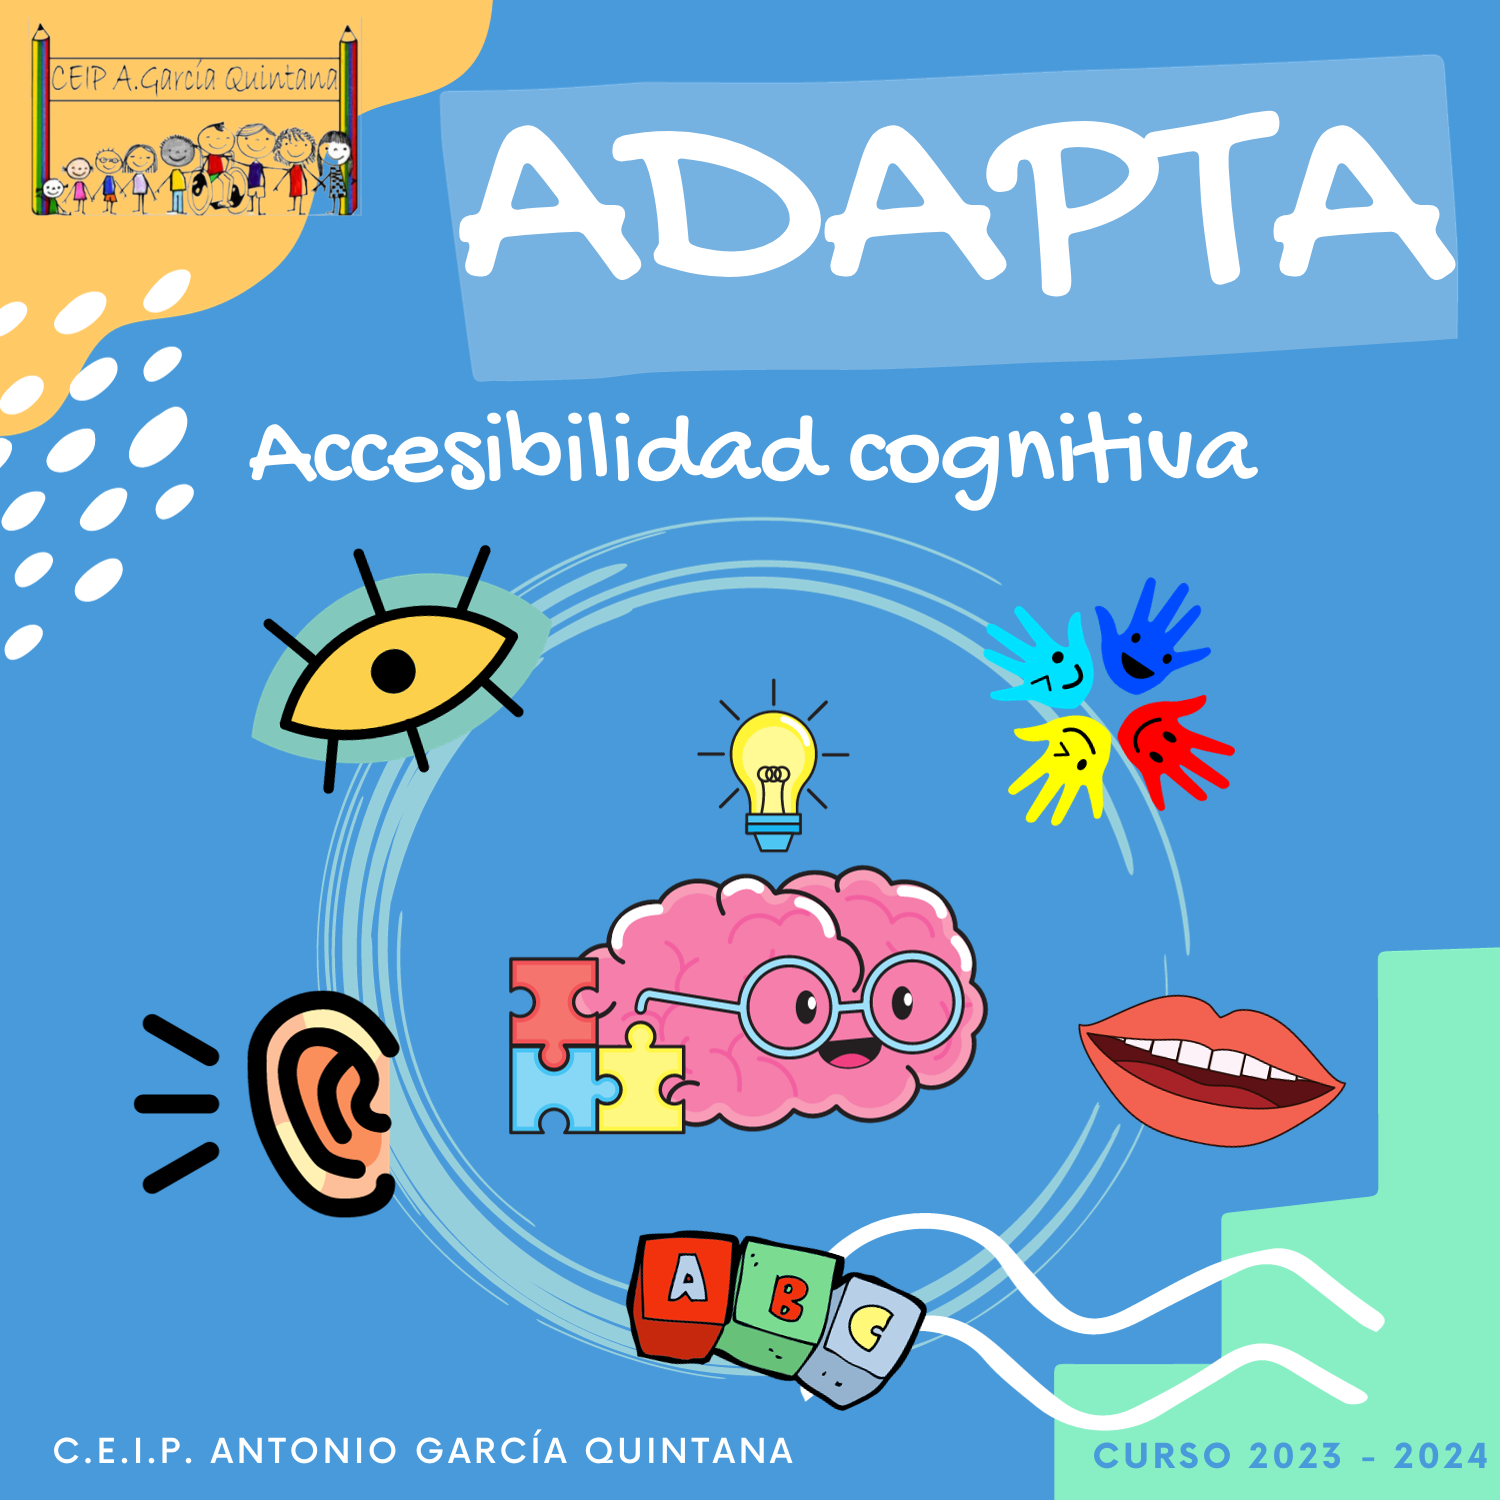 Imagen seminario ADAPTA